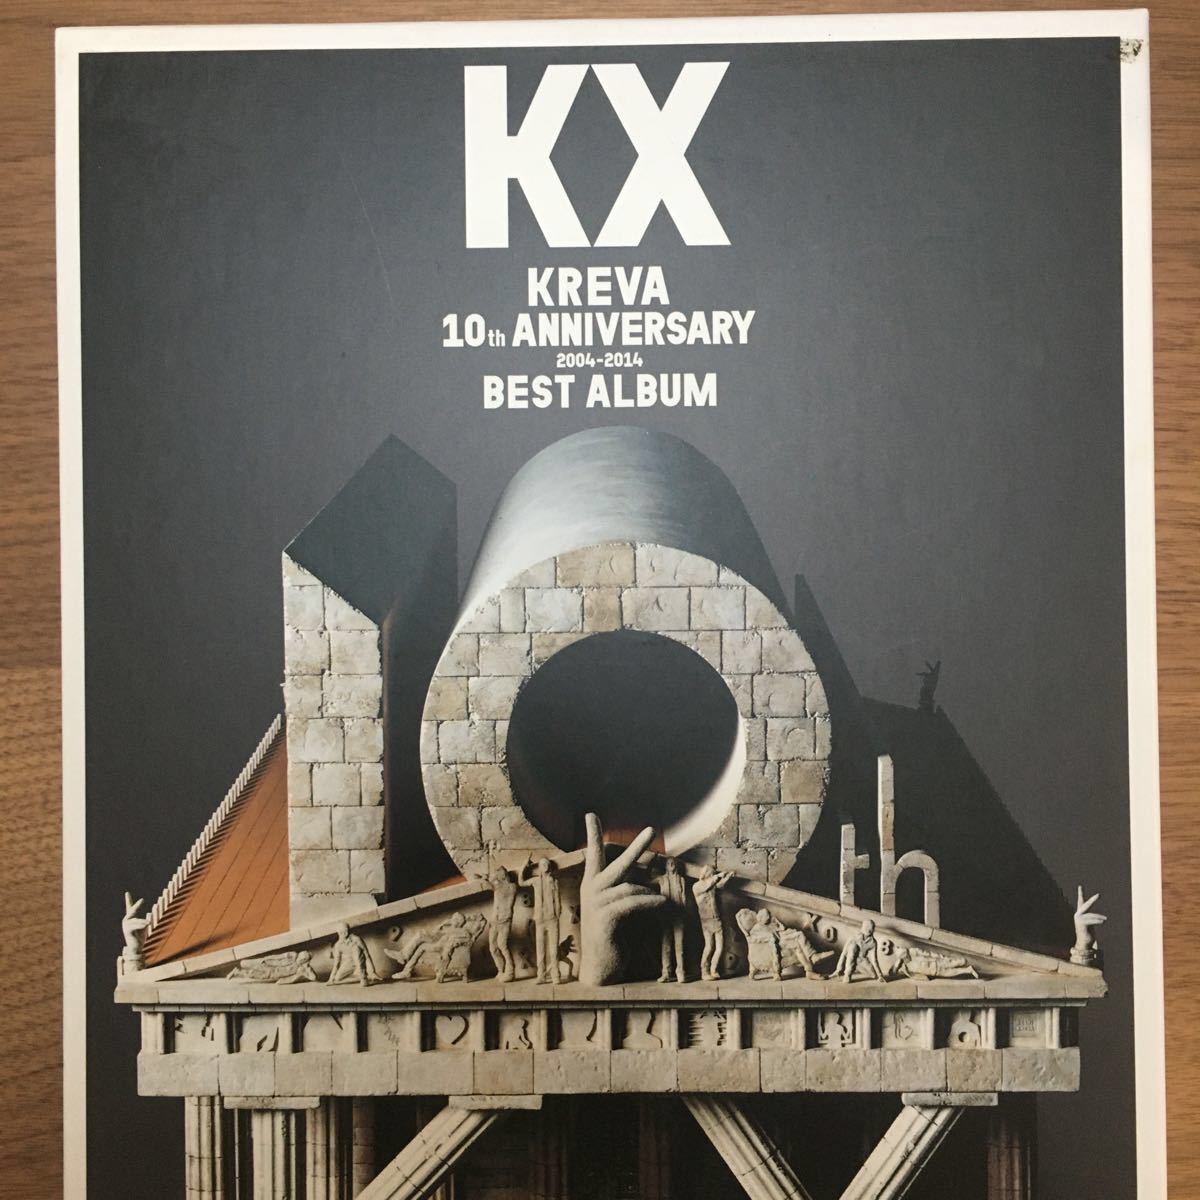 KX KREVA クレバ 10周年 予約限定生産版 ベストアルバムセット+本